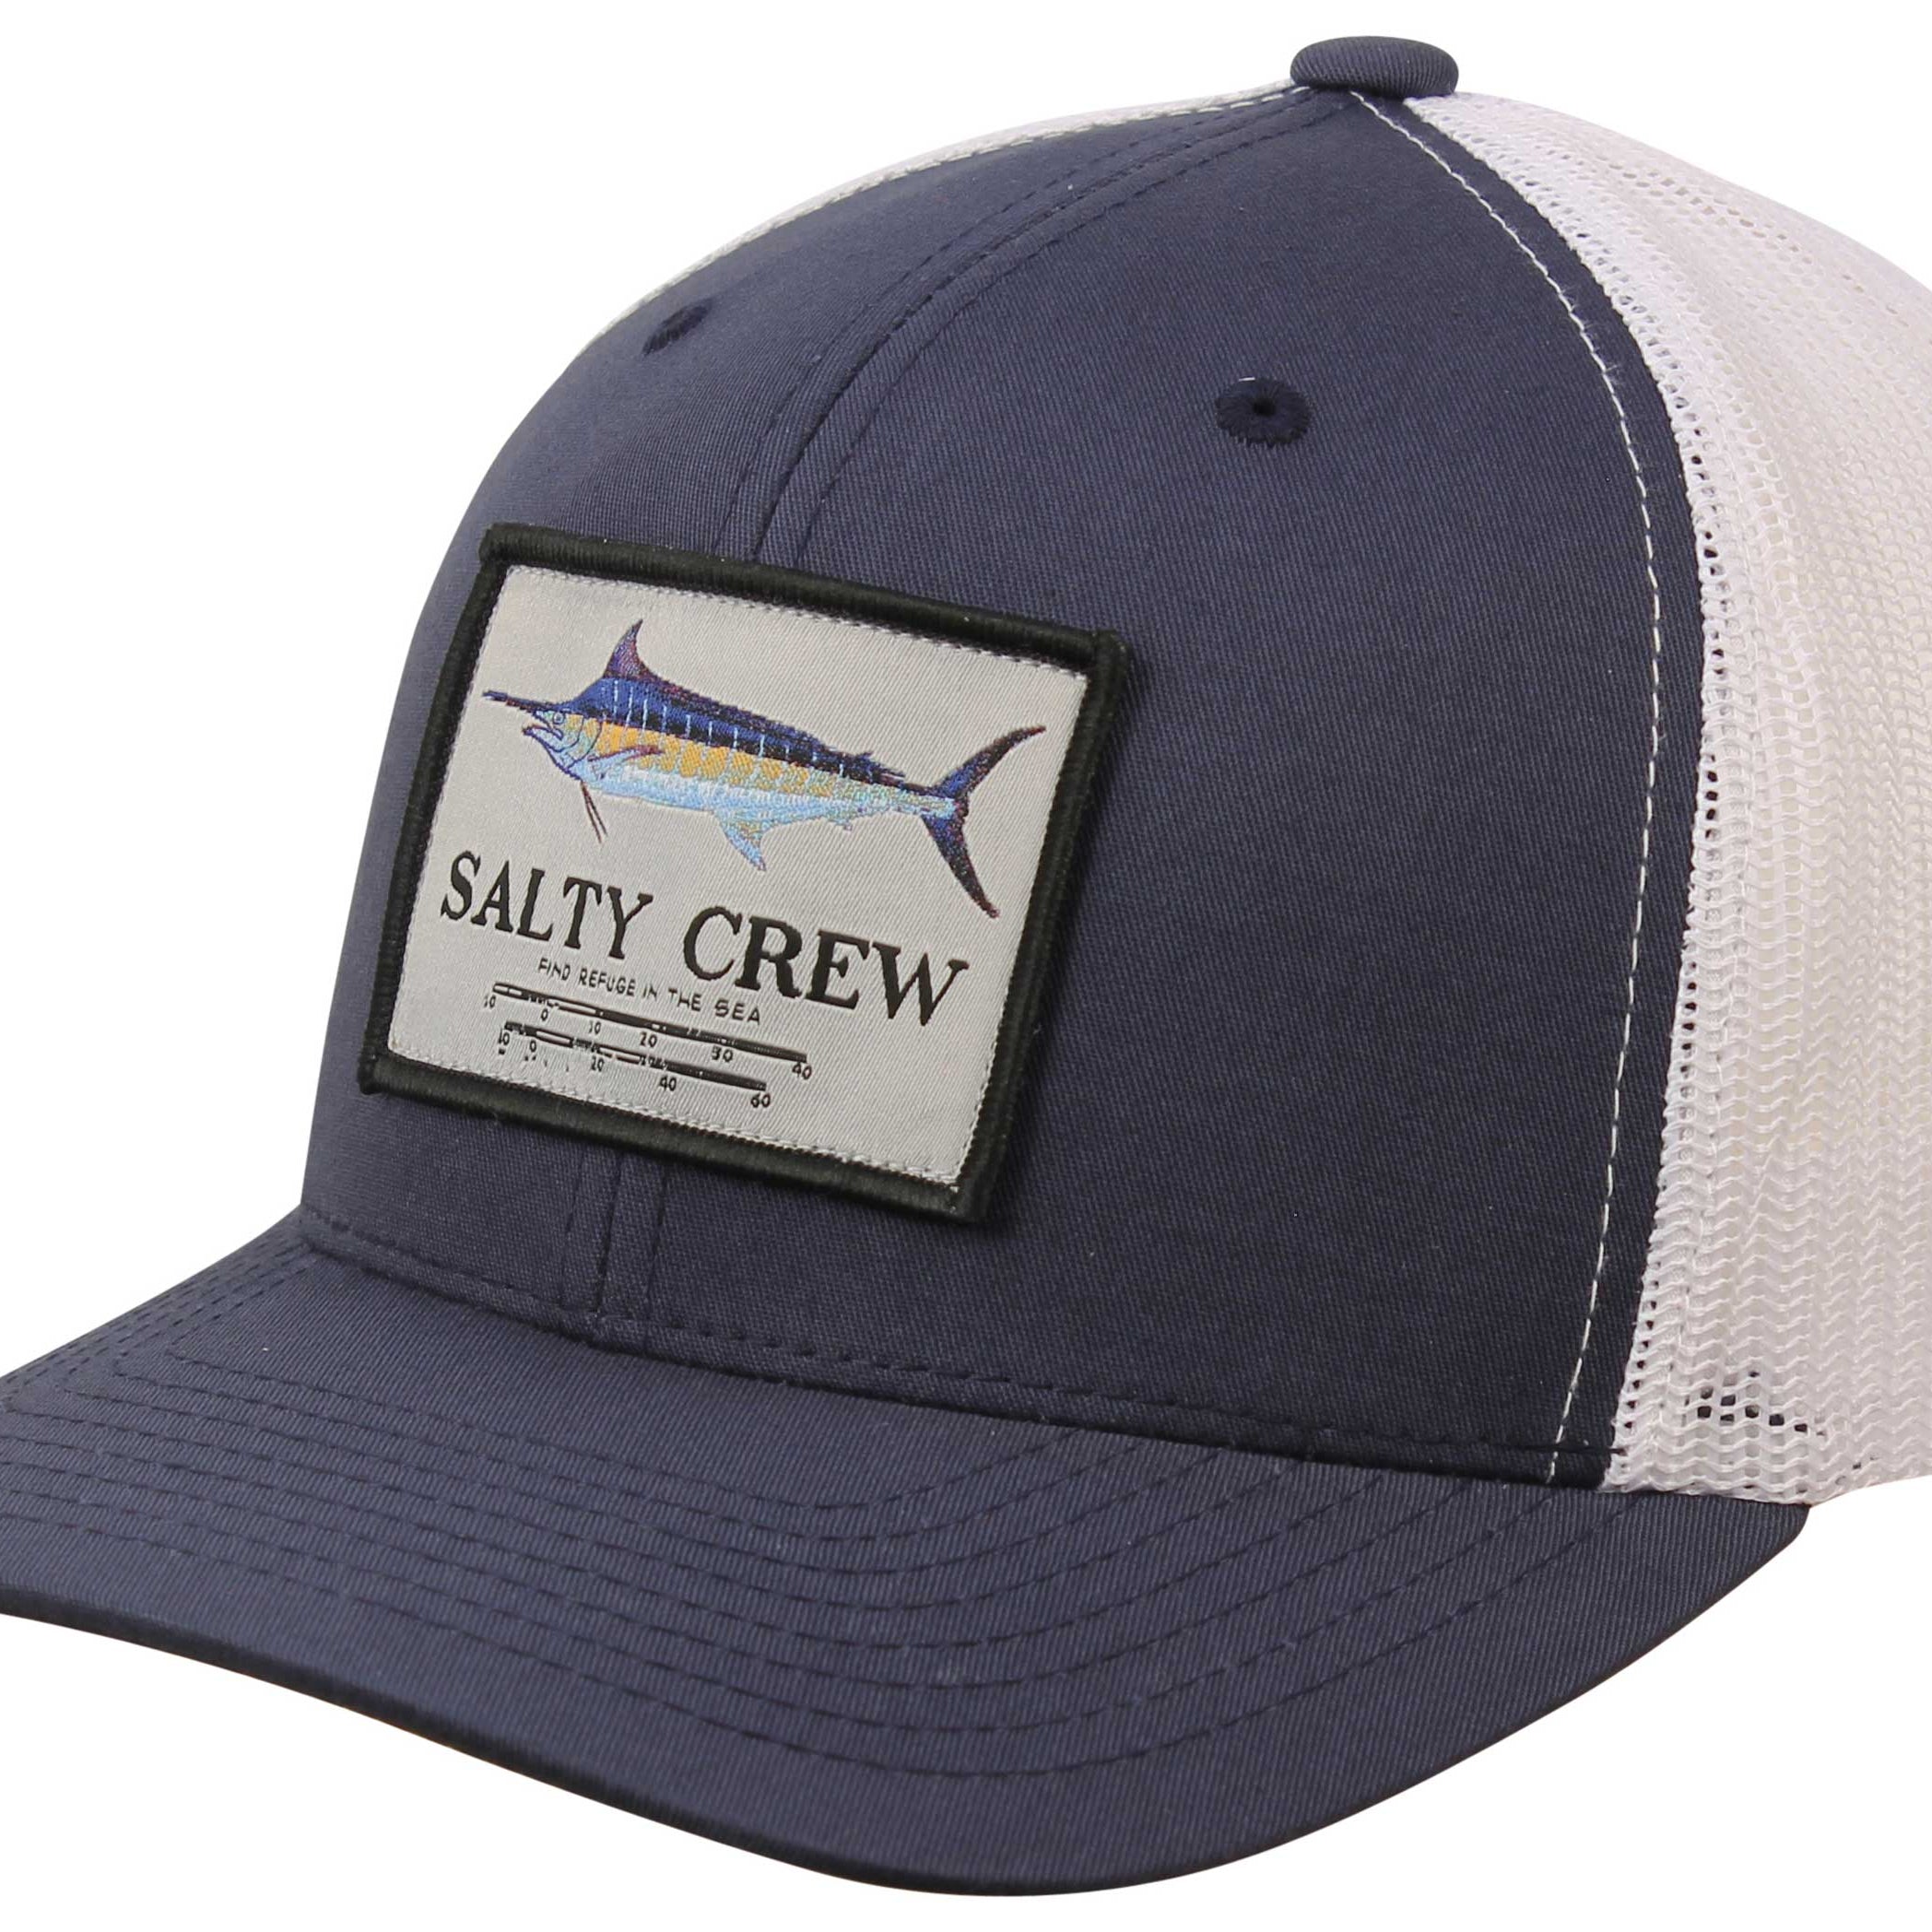 Salty Crew Marlin Mount Trucker Hat Navy/White OS